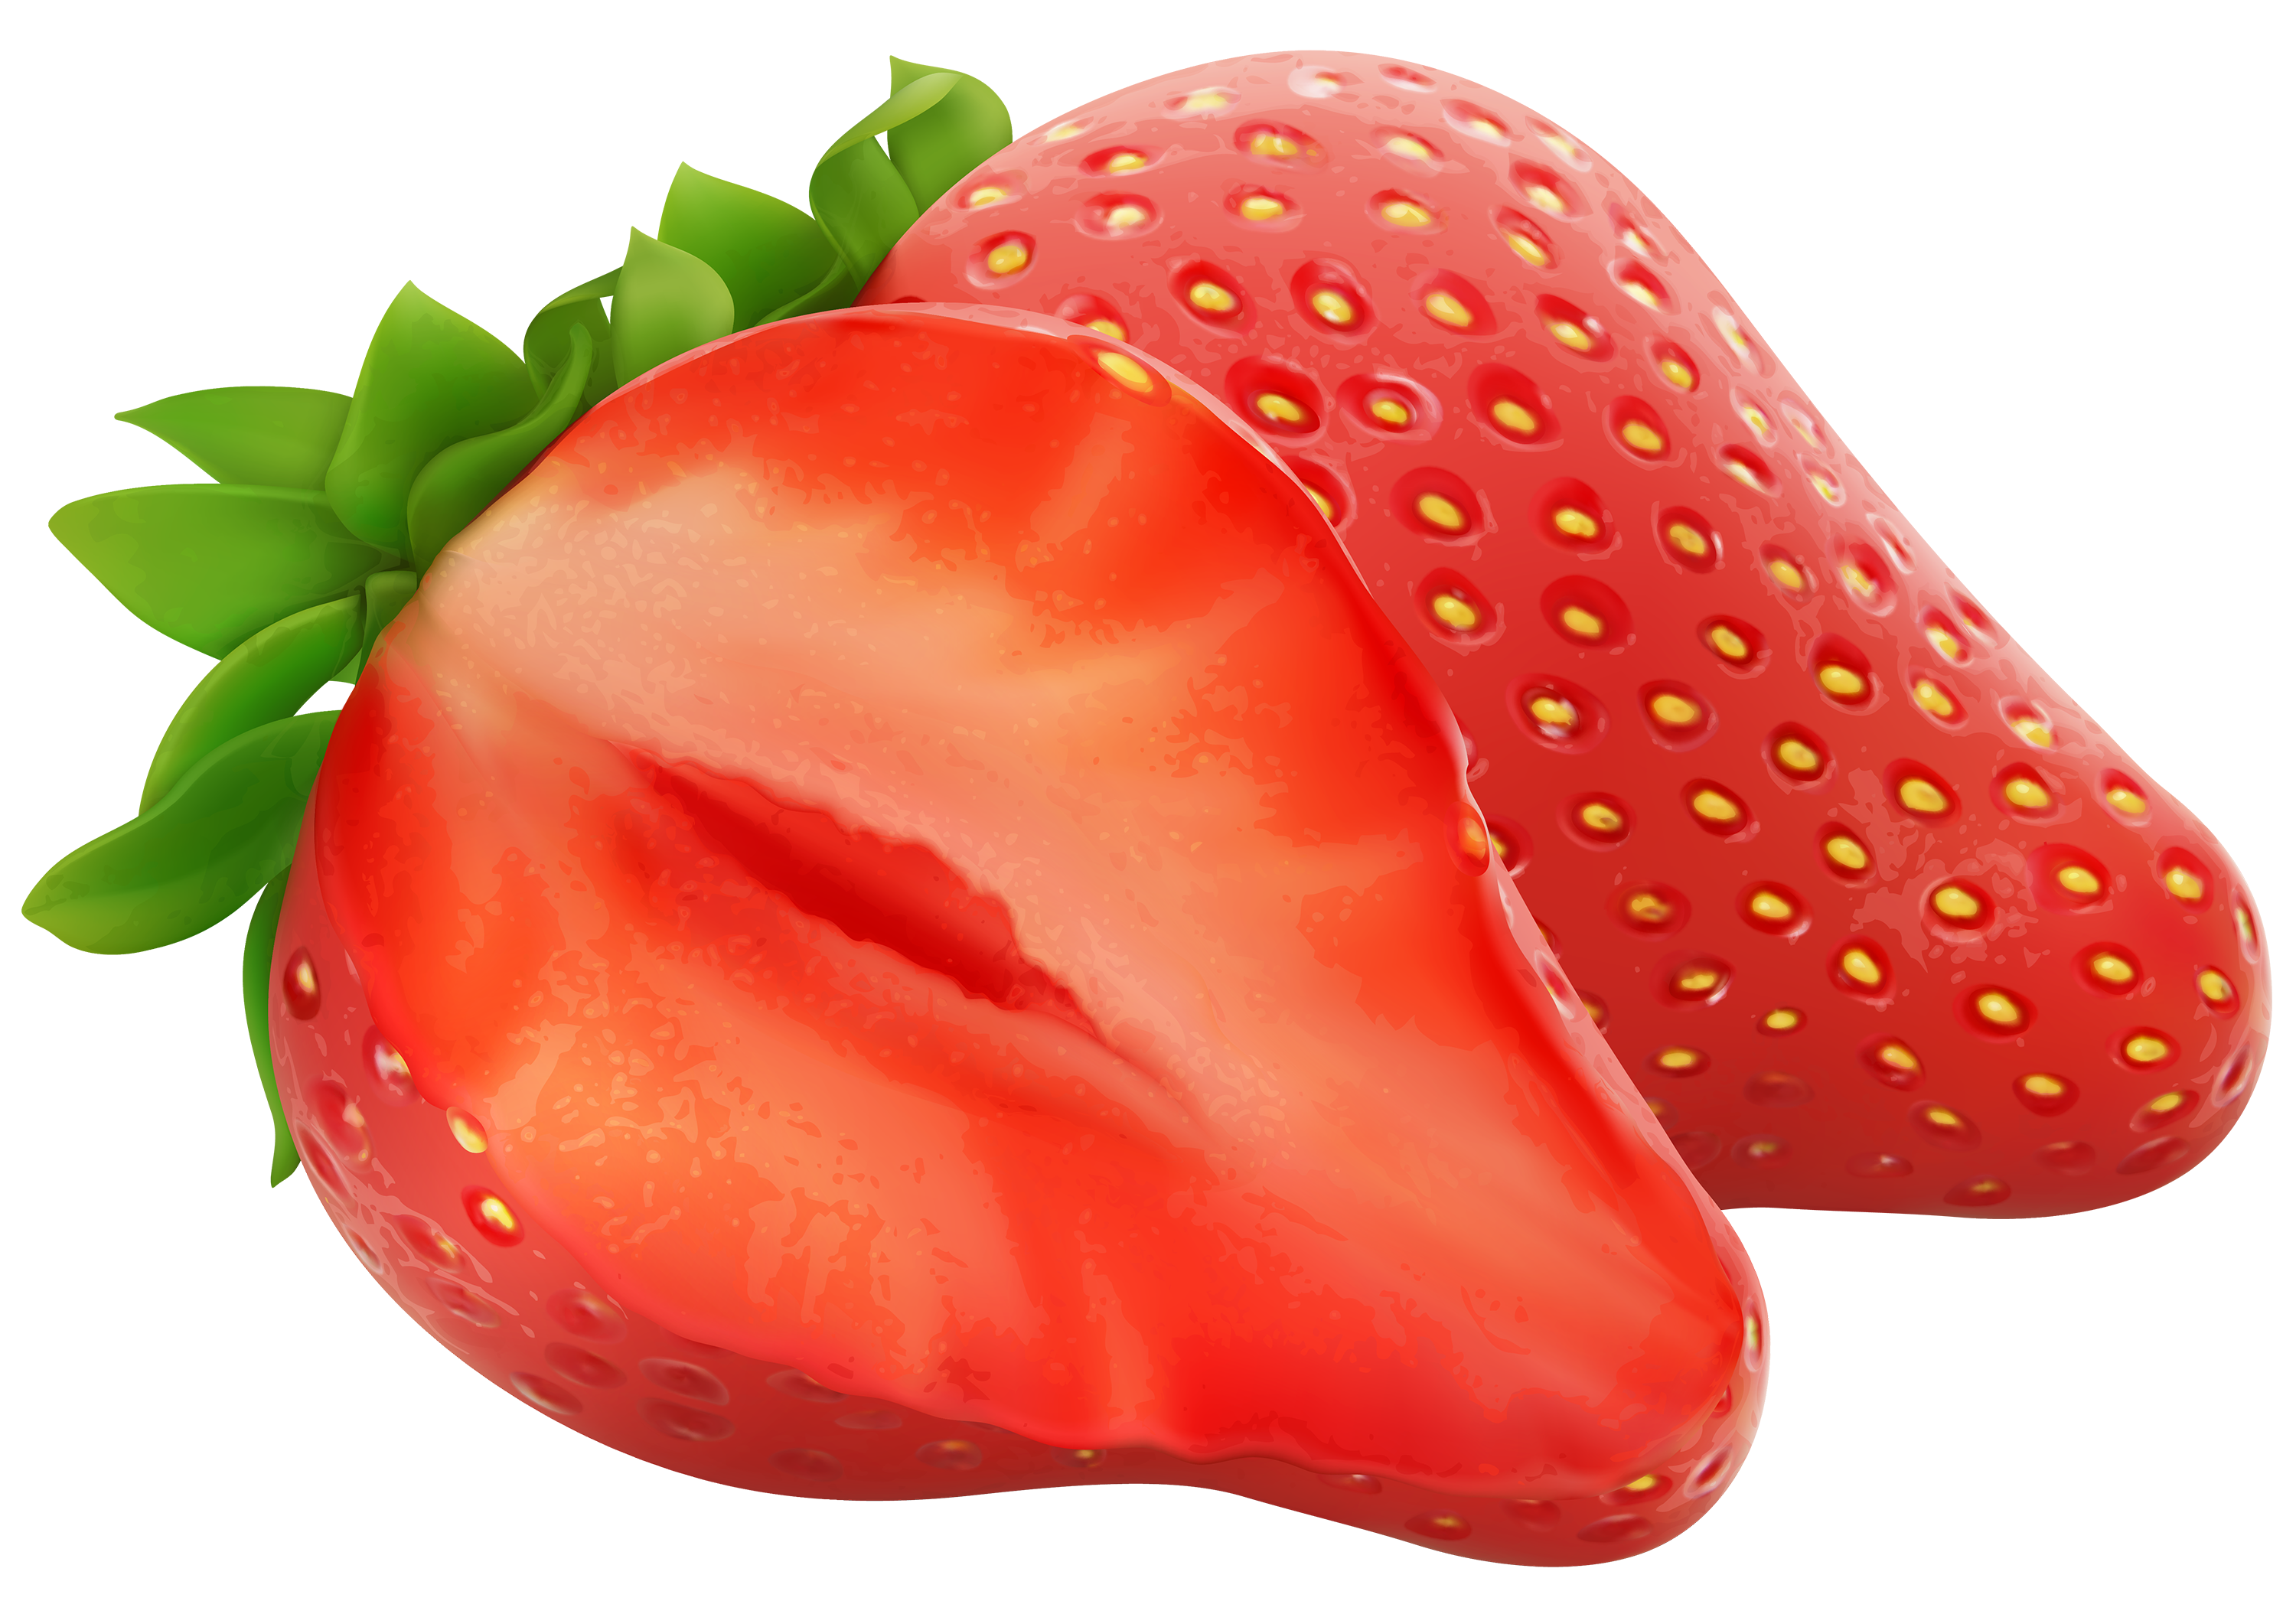 strawberry banana clipart - photo #27